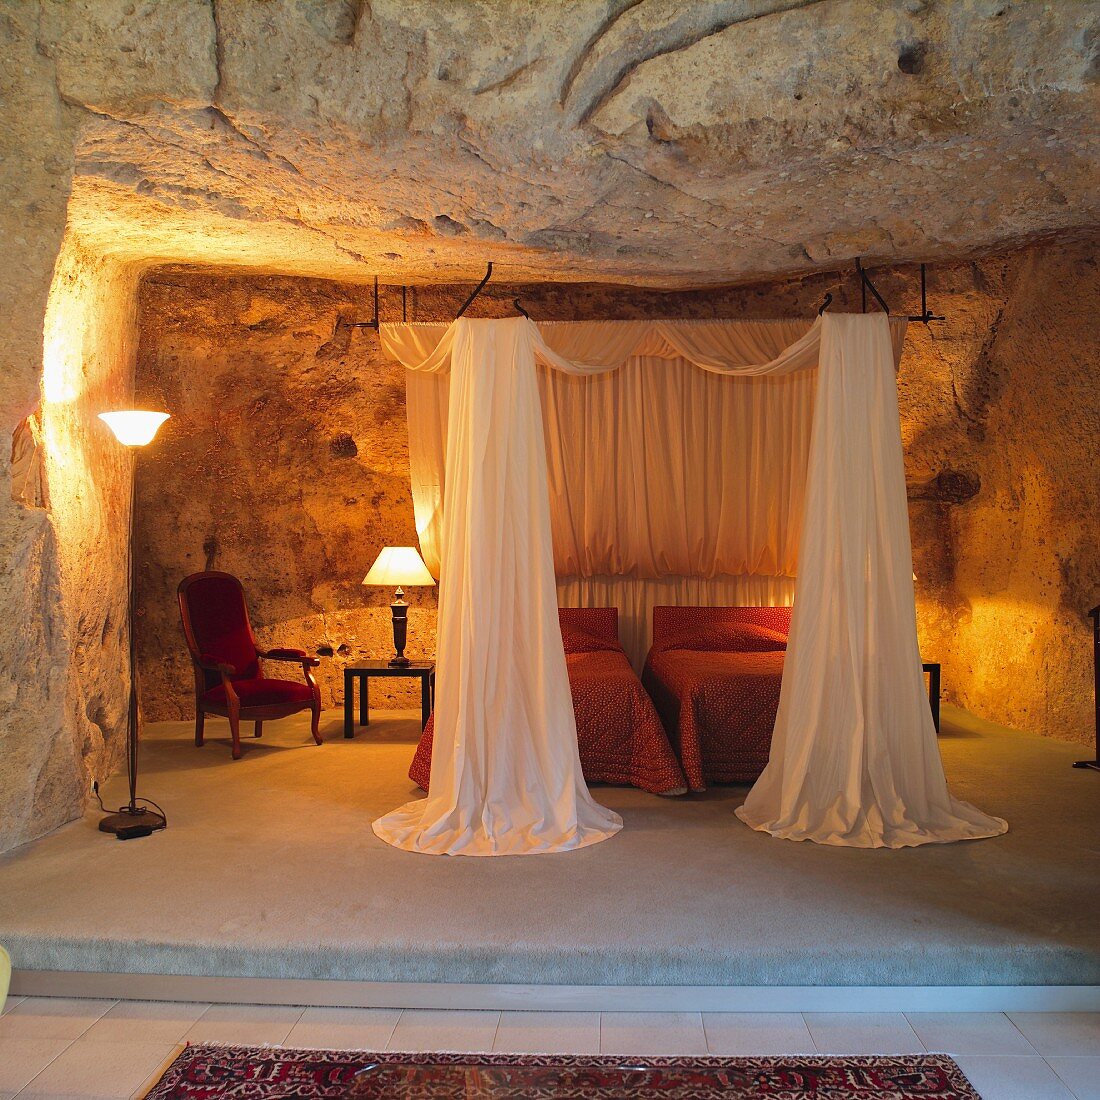 Offener Schlafbereich auf Podest - Einzelbetten mit Baldachin und leuchtenden Tischlampen in grottenähnlicher Nische